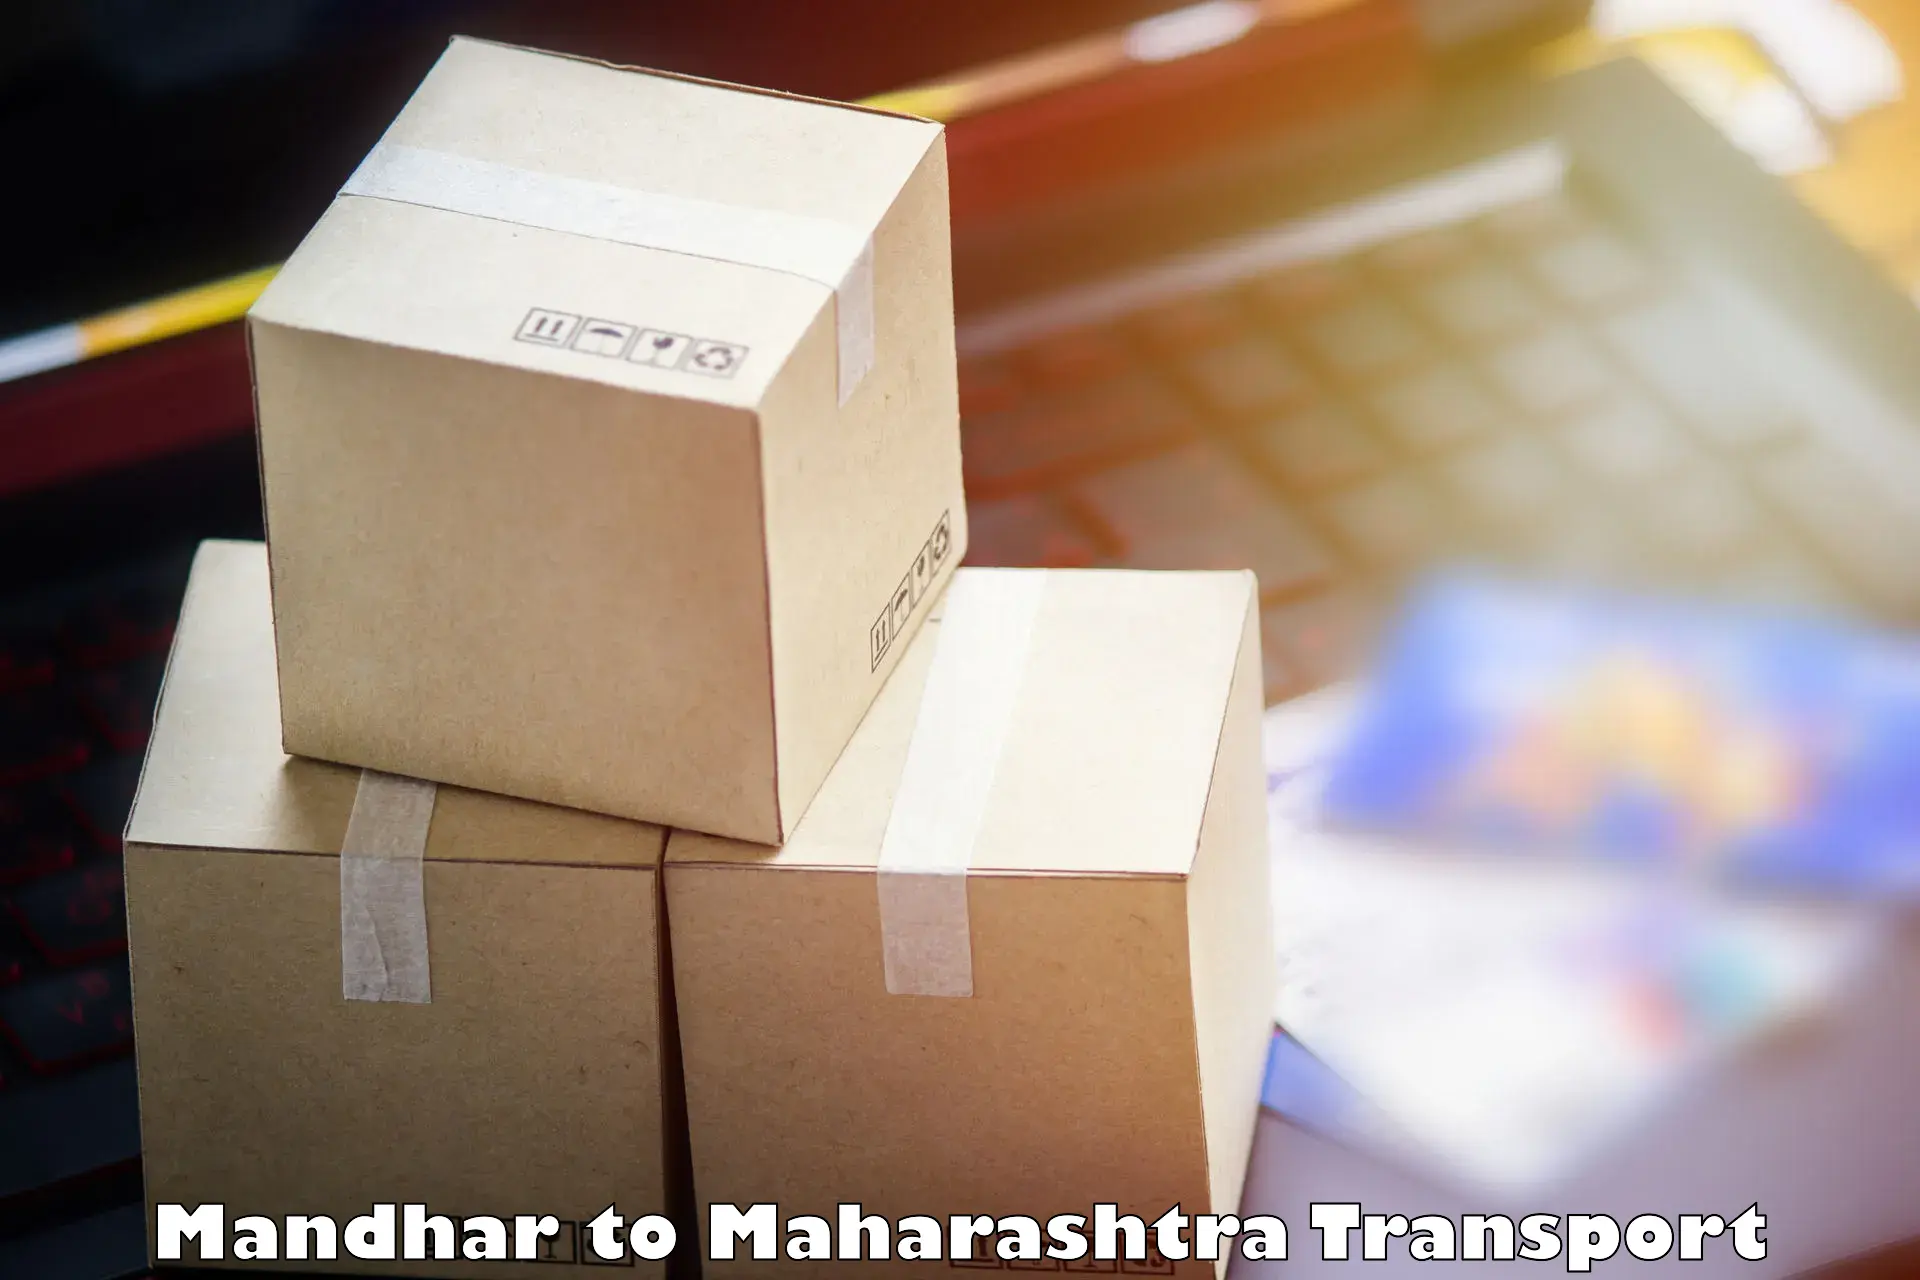 Online transport service Mandhar to IIT Mumbai